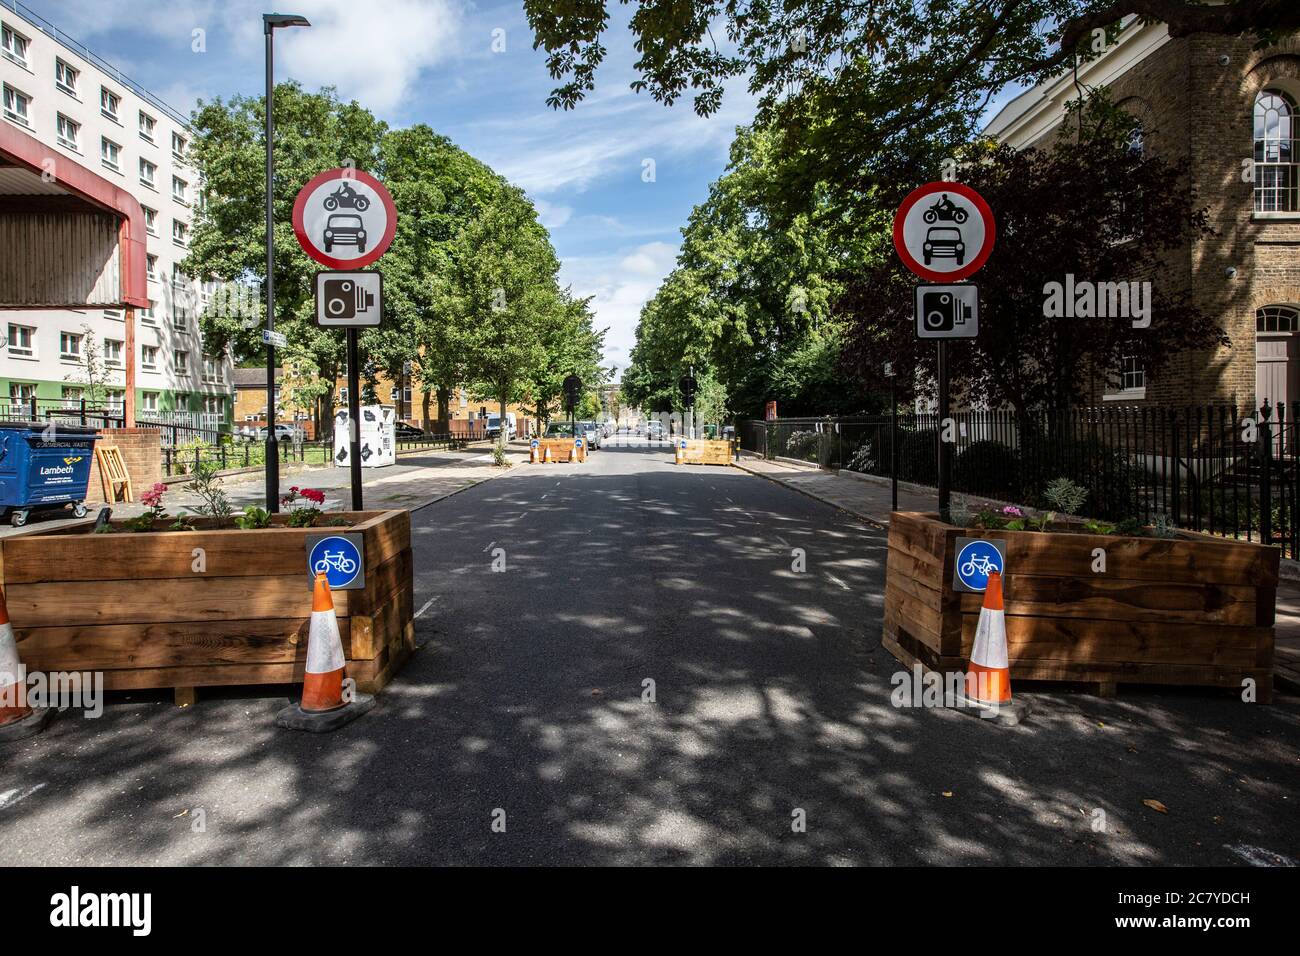 London Straßensperren, um den Verkehr zu beschränken, um "Fahrrad-Autobahnen" zu schaffen und zu fördern Radfahren & Luftverschmutzung auf Matthew's Road, Lambeth, SW2 zu reduzieren Stockfoto